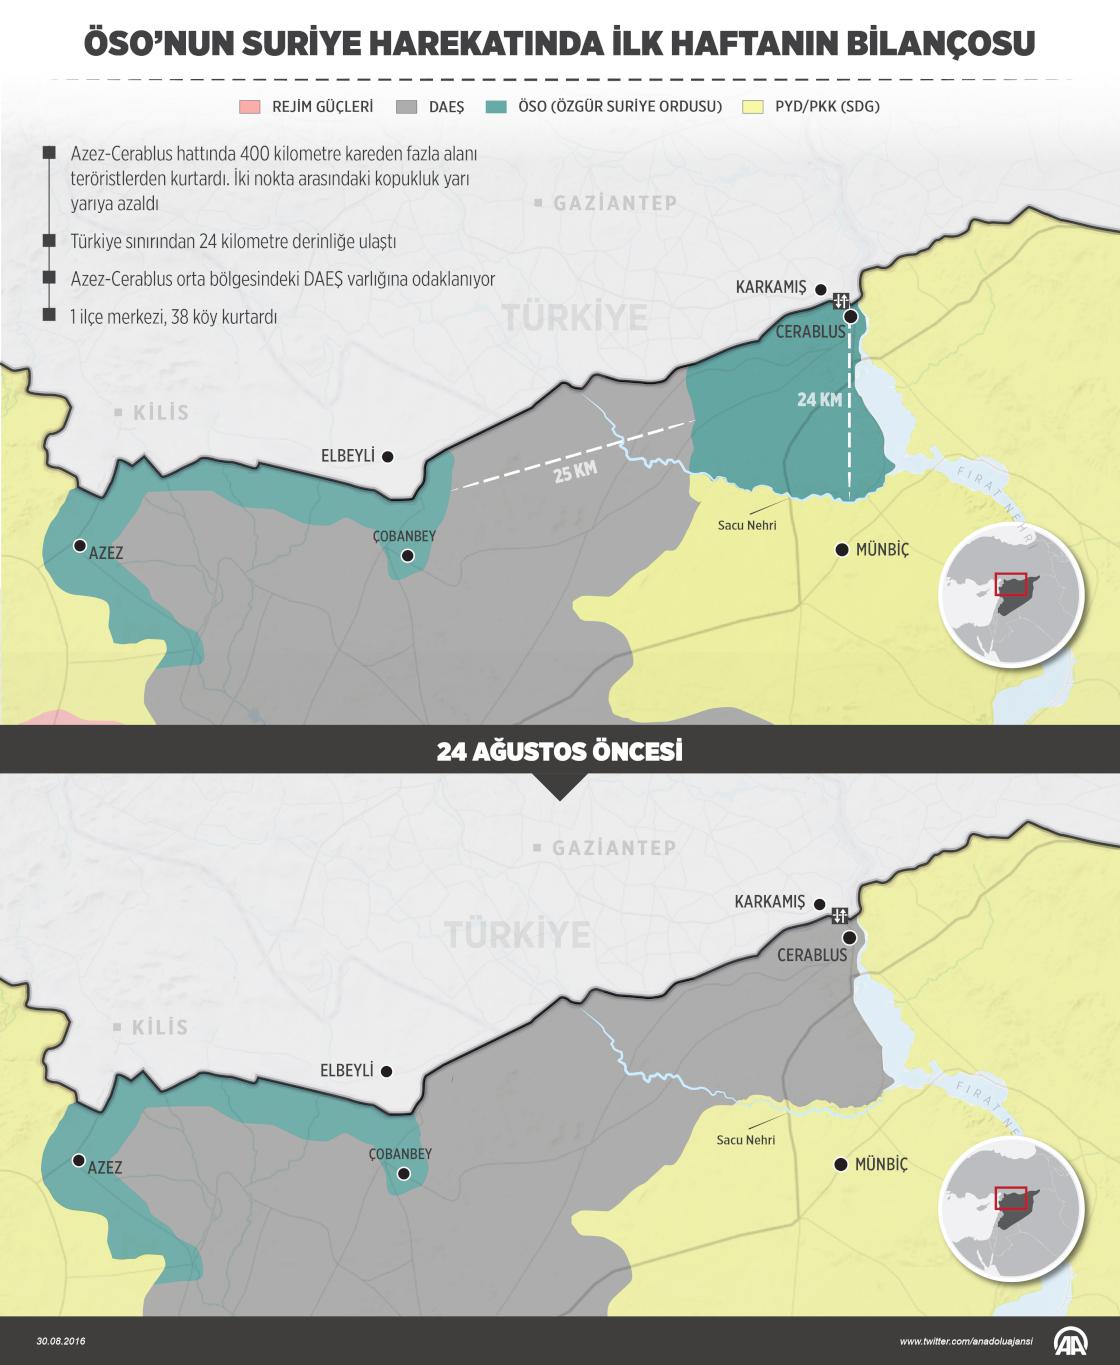 ÖSO’nun Suriye harekatında ilk haftanın bilançosu